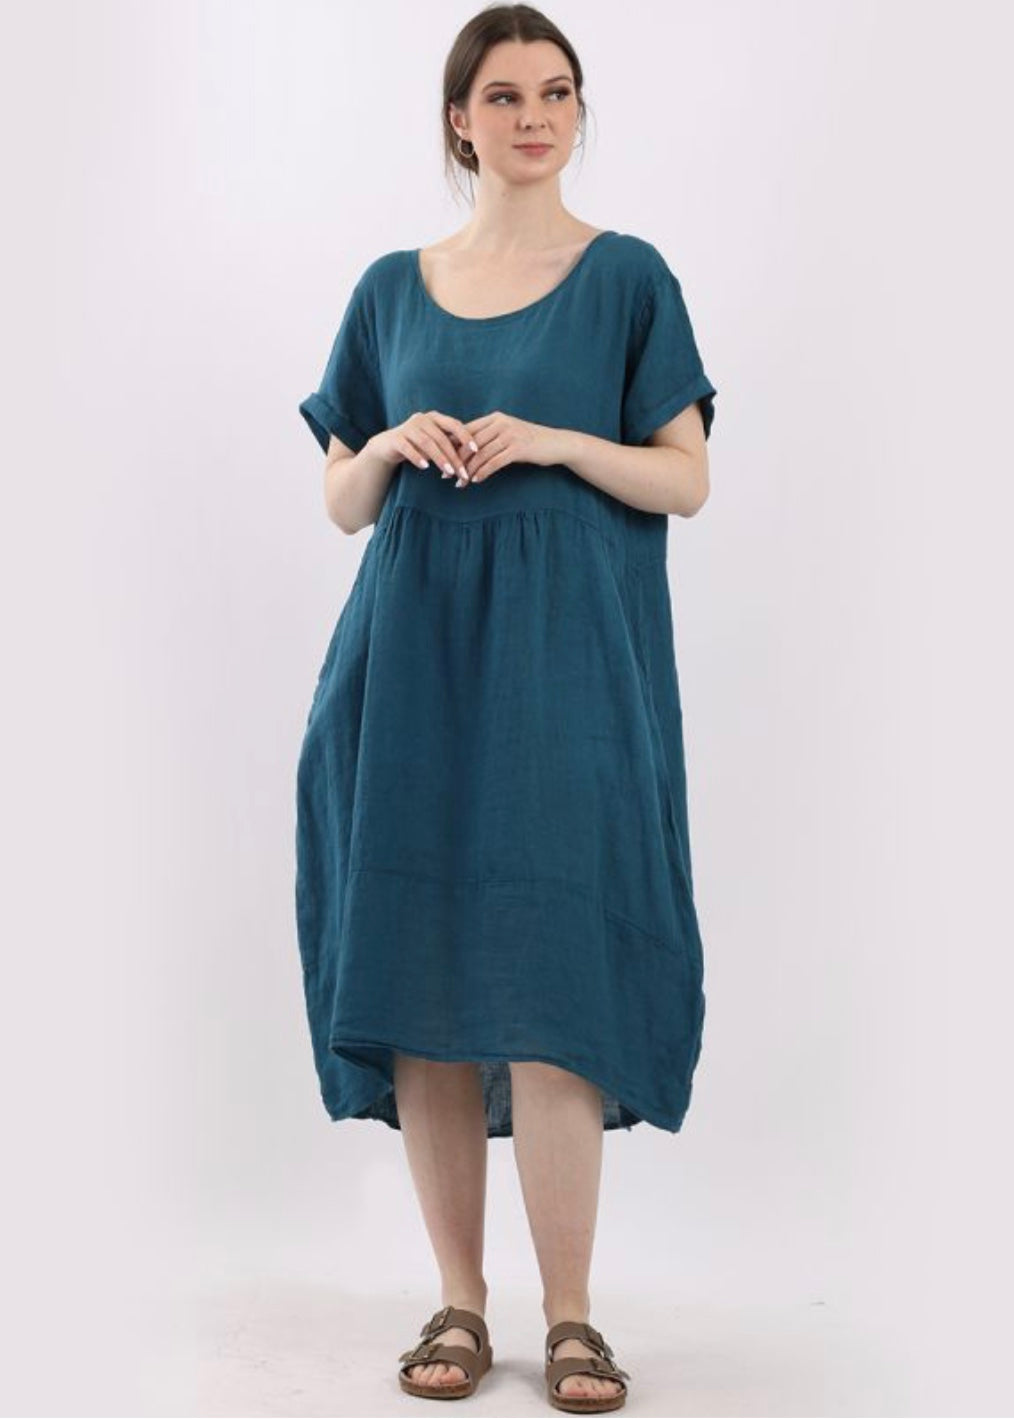 Sands - Lagenlook Linen Dress / Teal